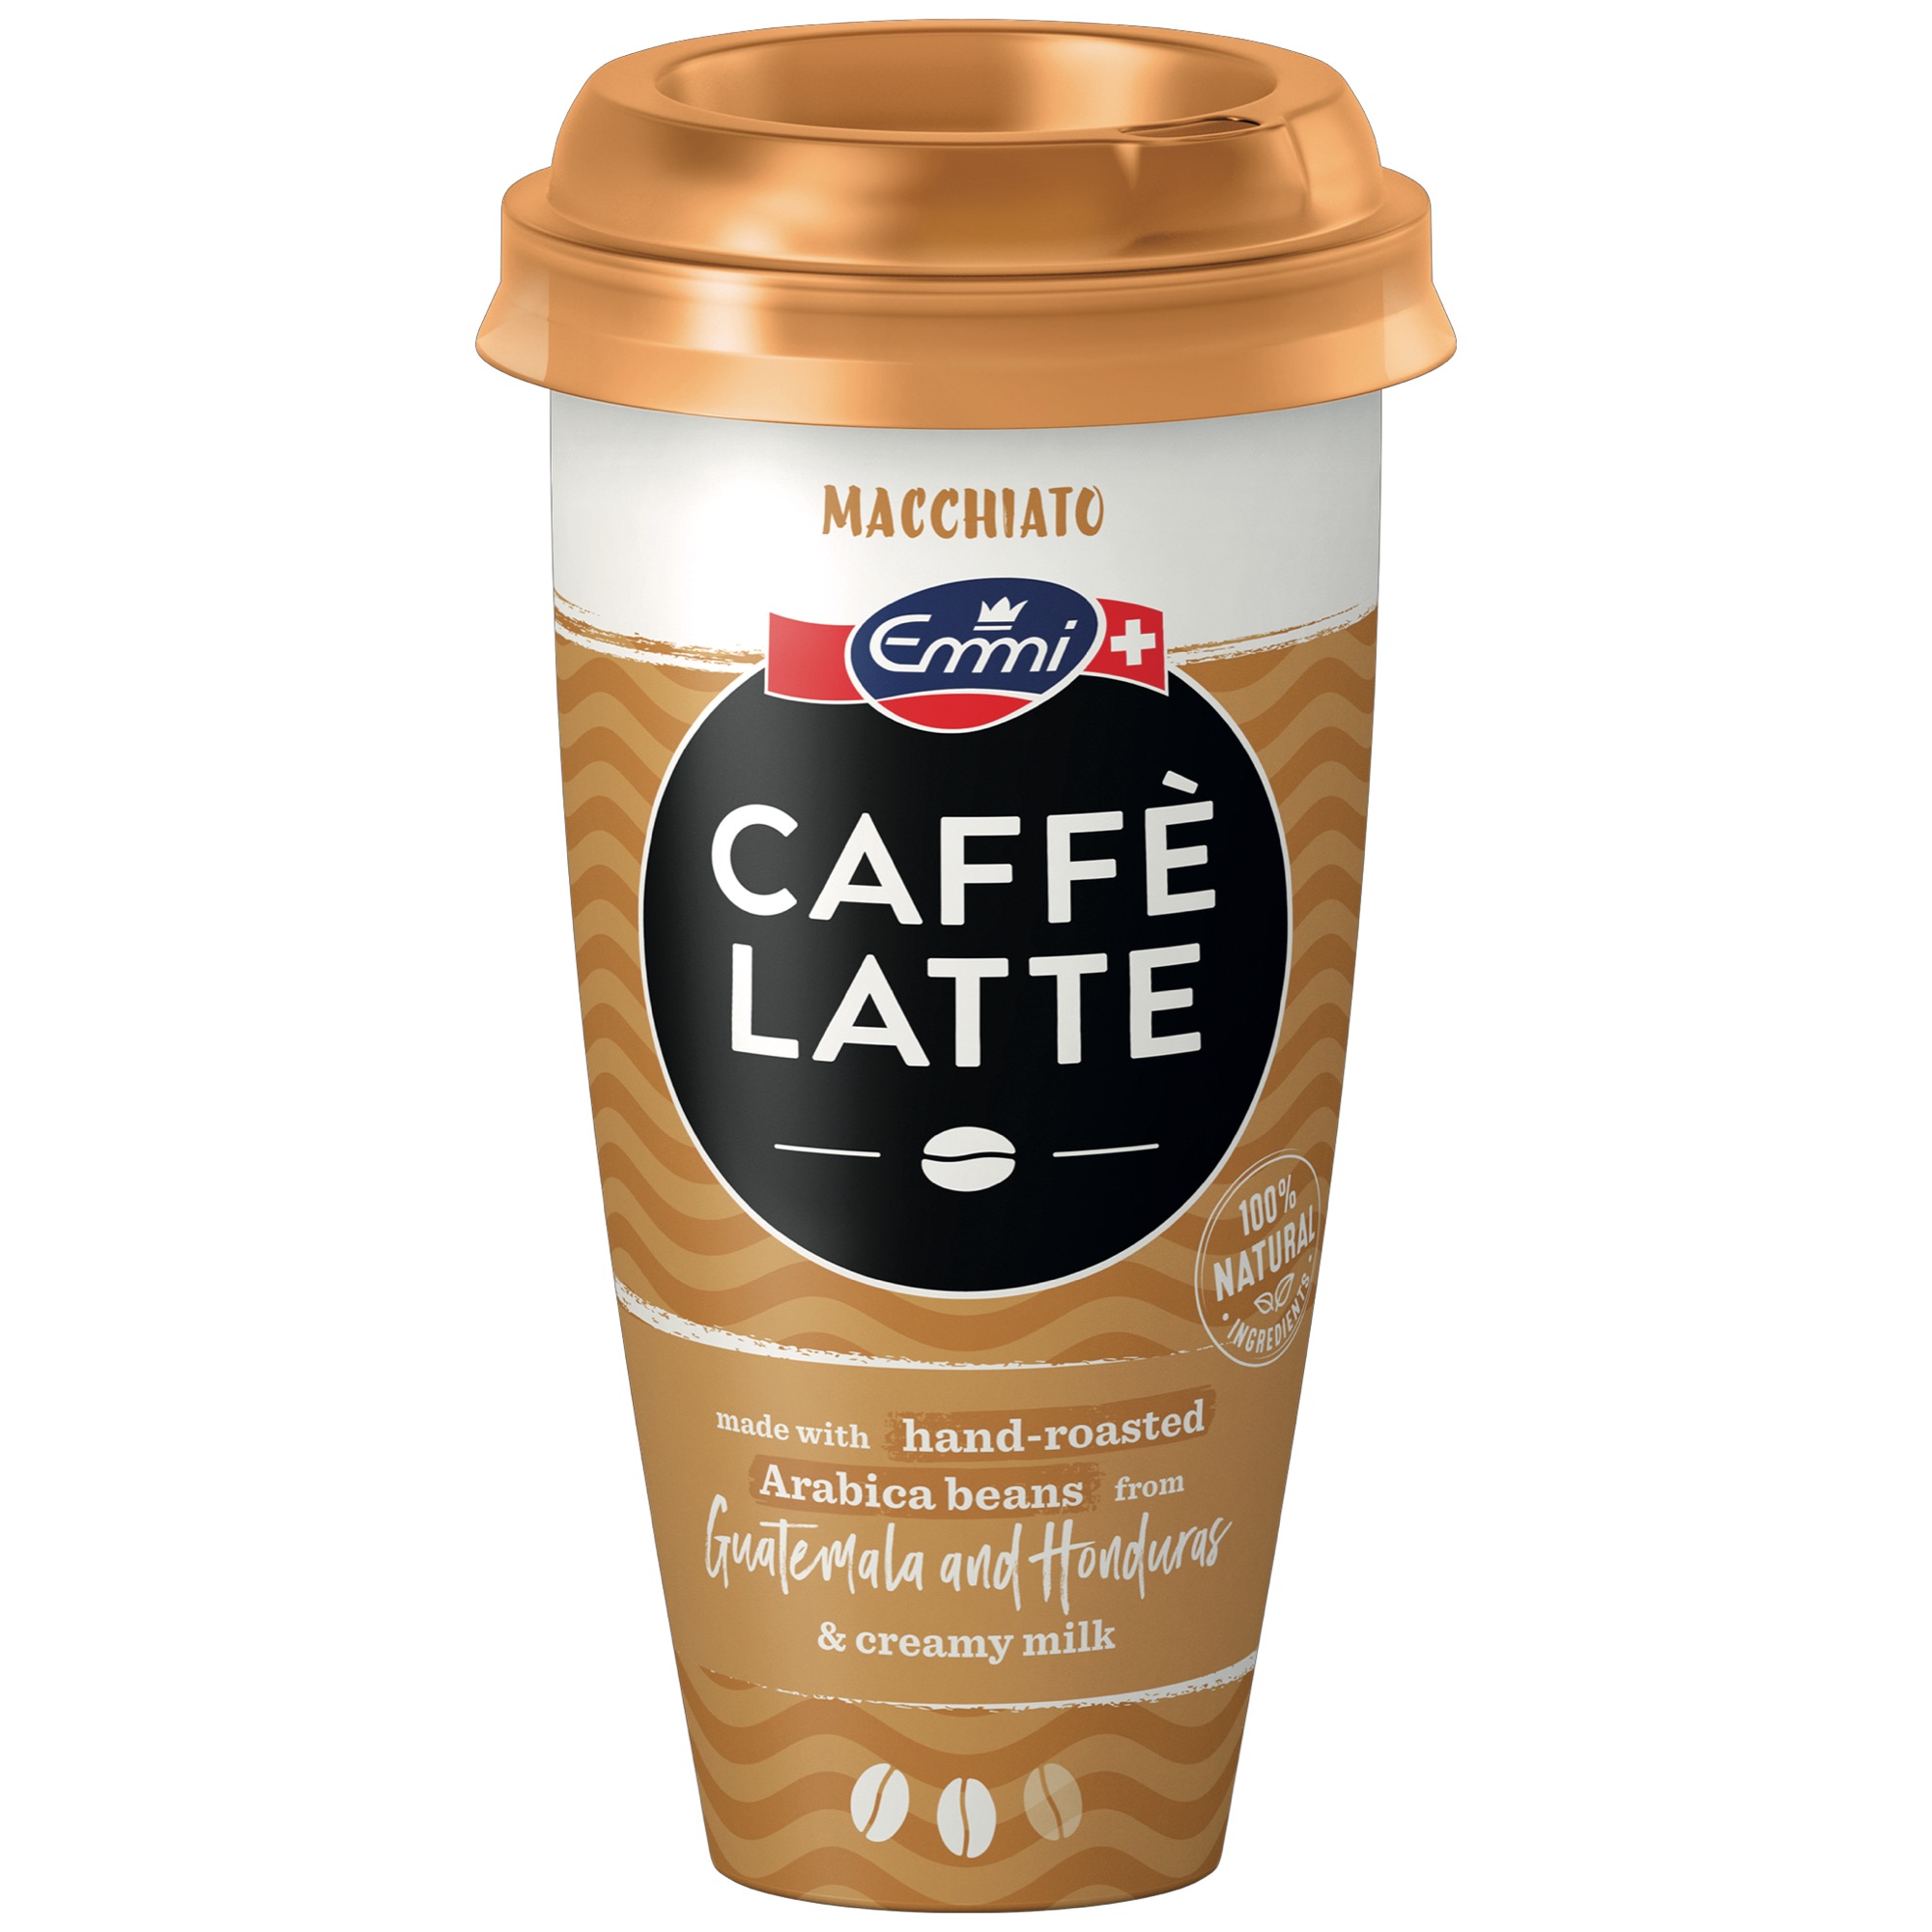 Emmi Caffe Latte 230ml, Macchiato 5%